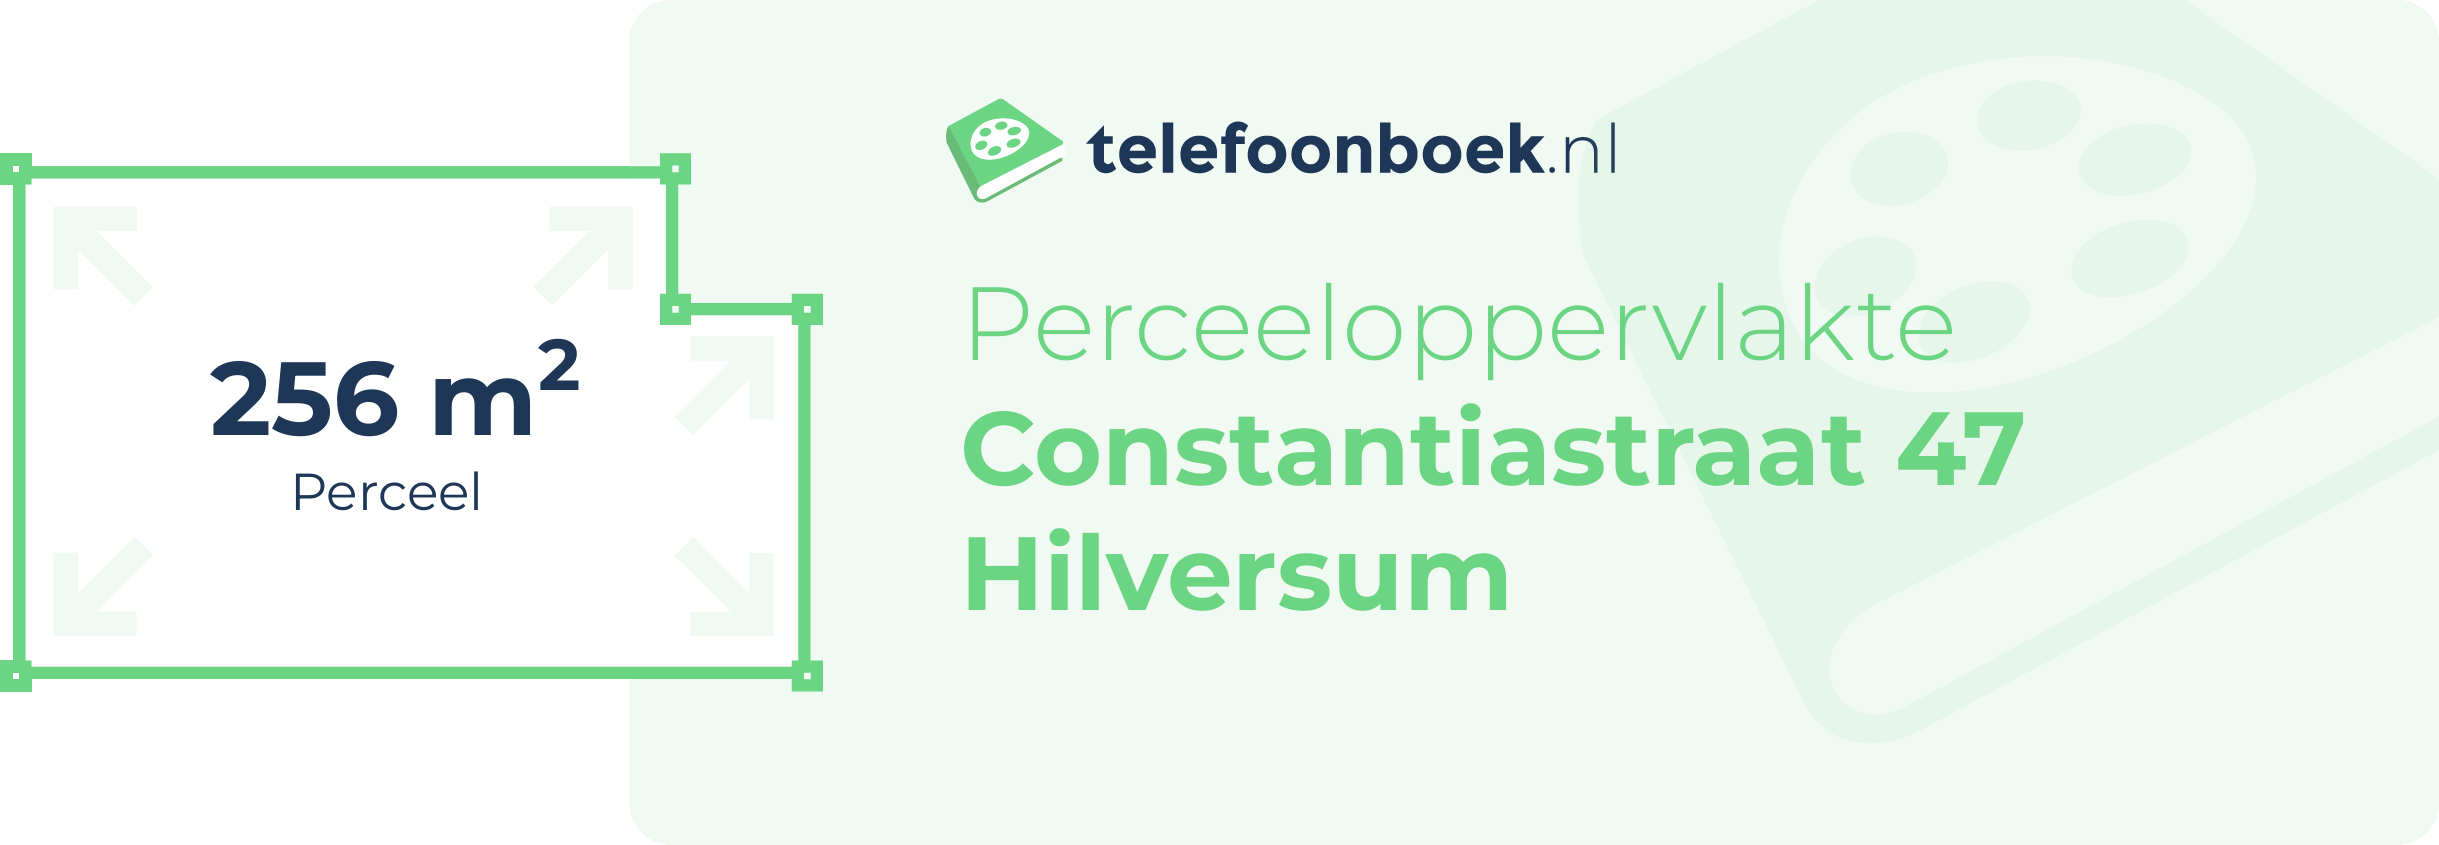 Perceeloppervlakte Constantiastraat 47 Hilversum